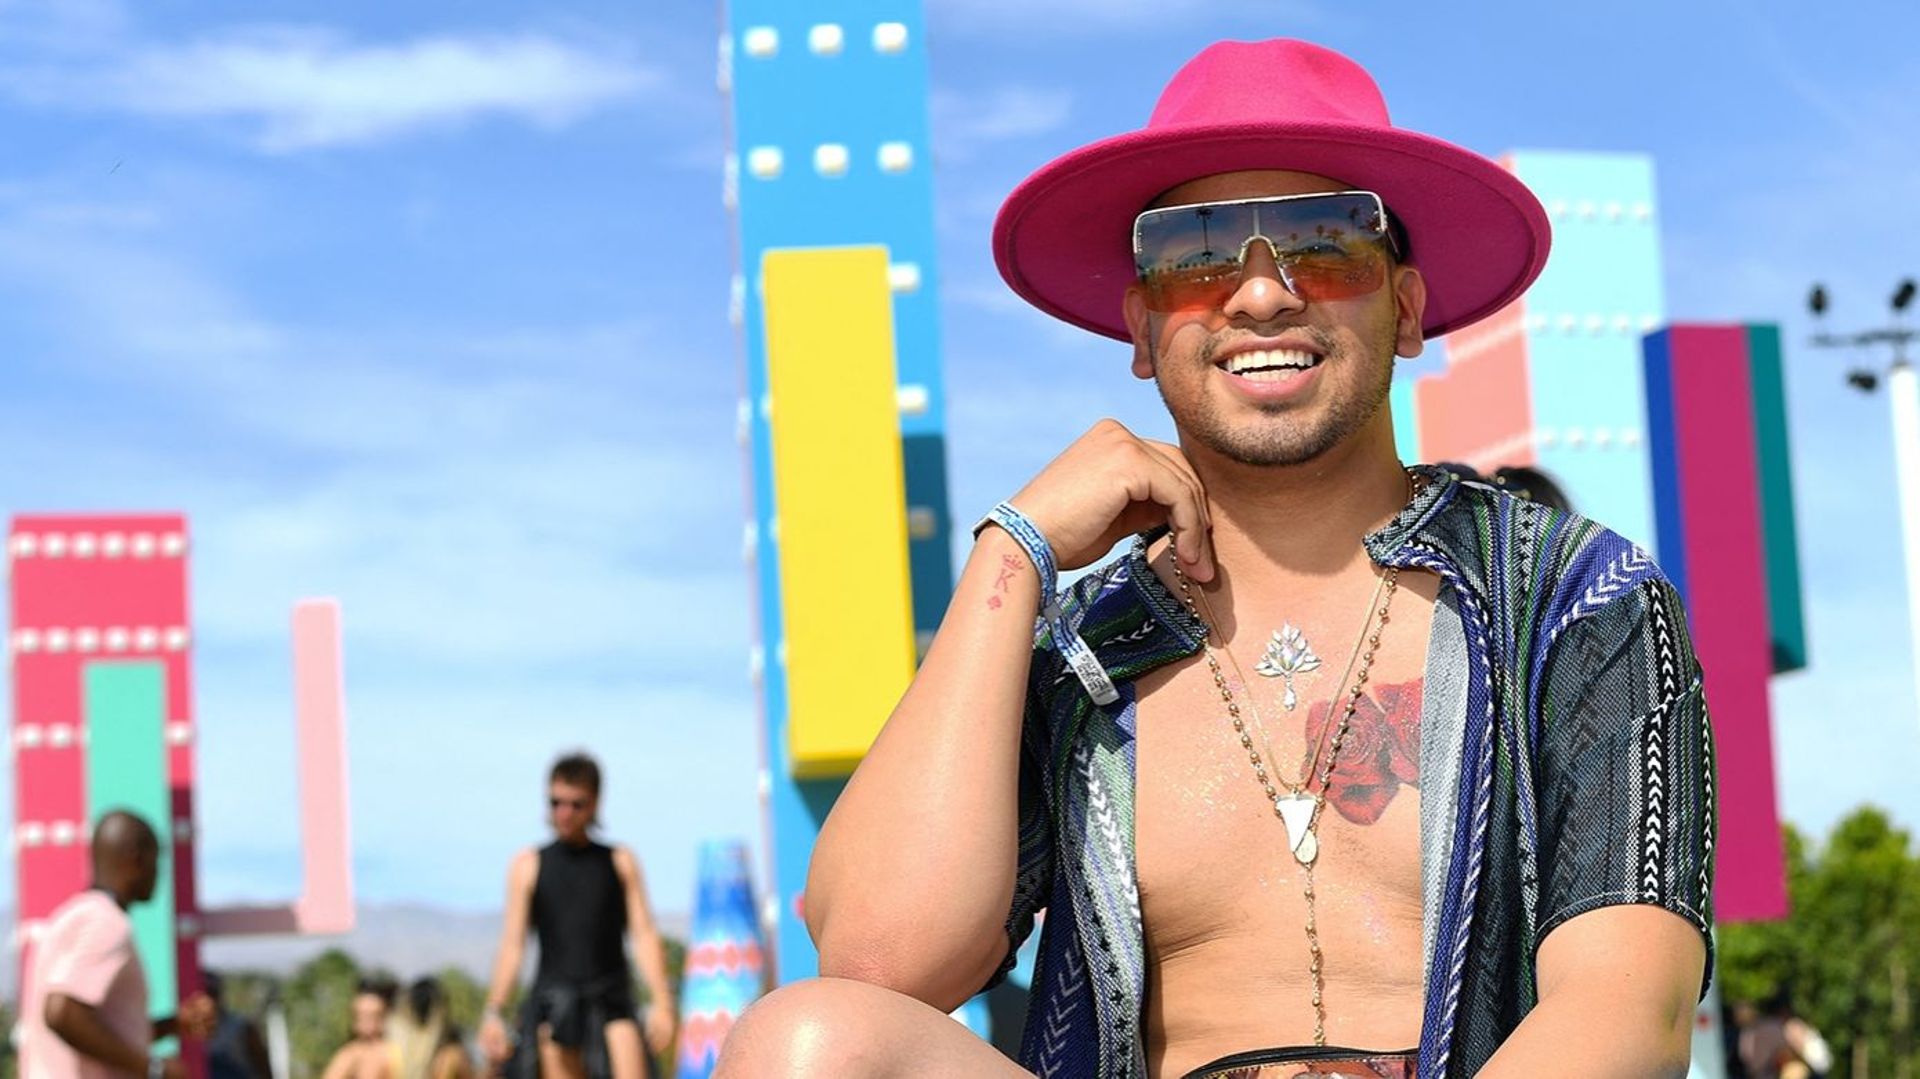 Le festival de musique de Coachella revient vendredi, après trois ans d'interruption